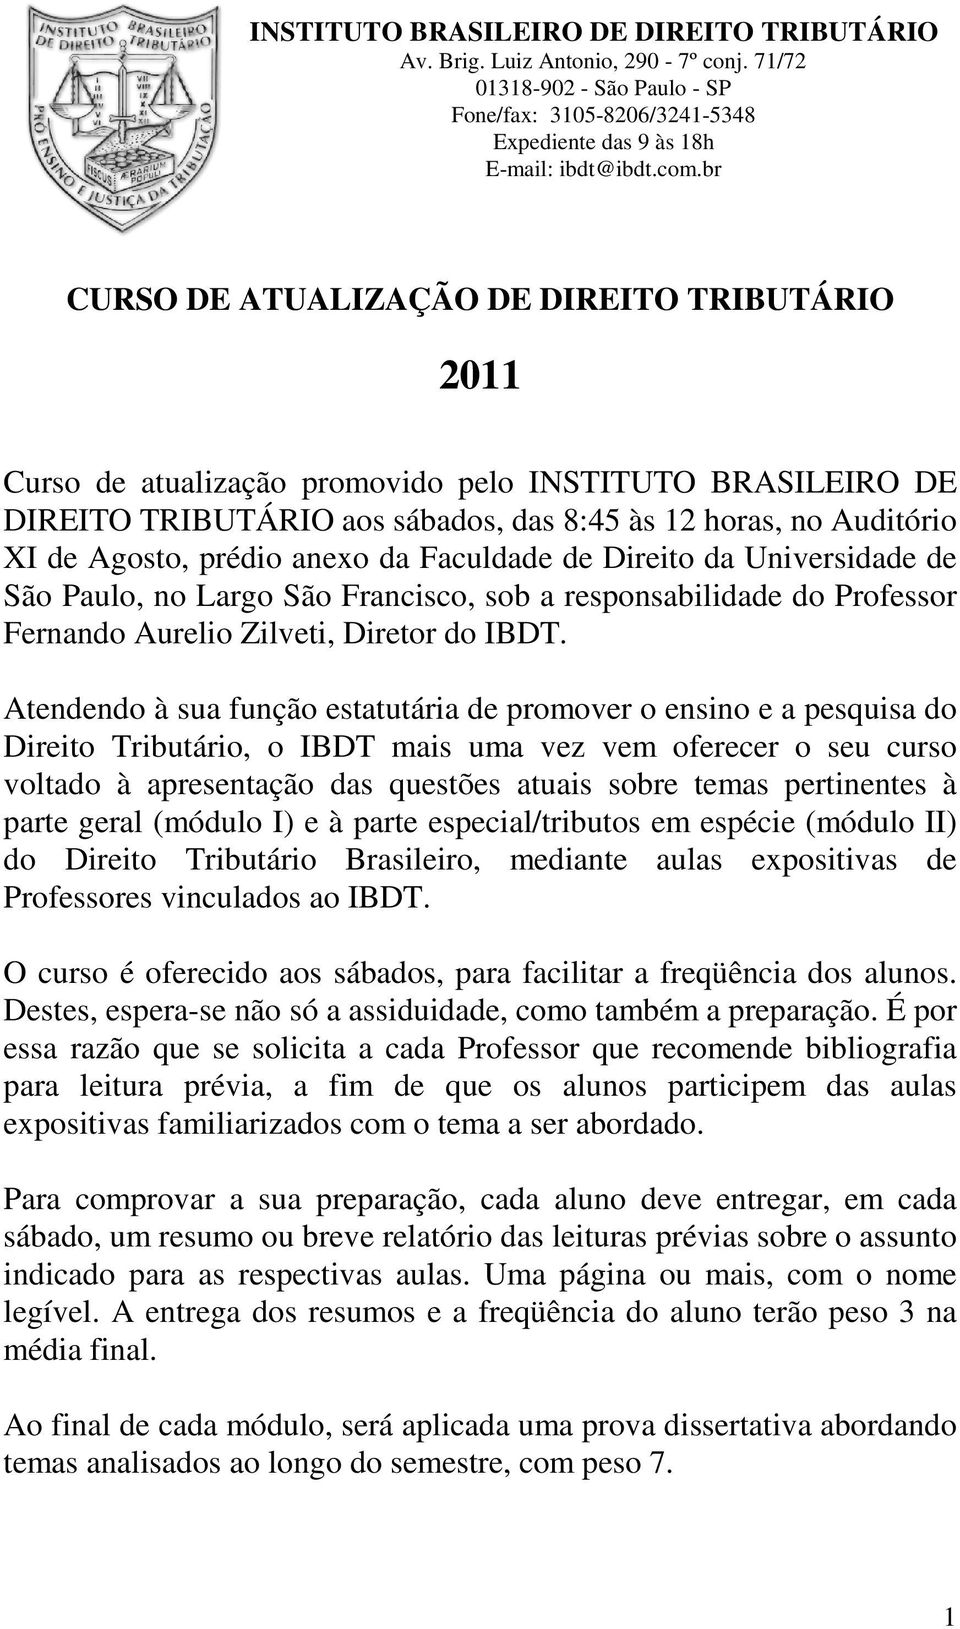 anexo da Faculdade de Direito da Universidade de São Paulo, no Largo São Francisco, sob a responsabilidade do Professor Fernando Aurelio Zilveti, Diretor do IBDT.